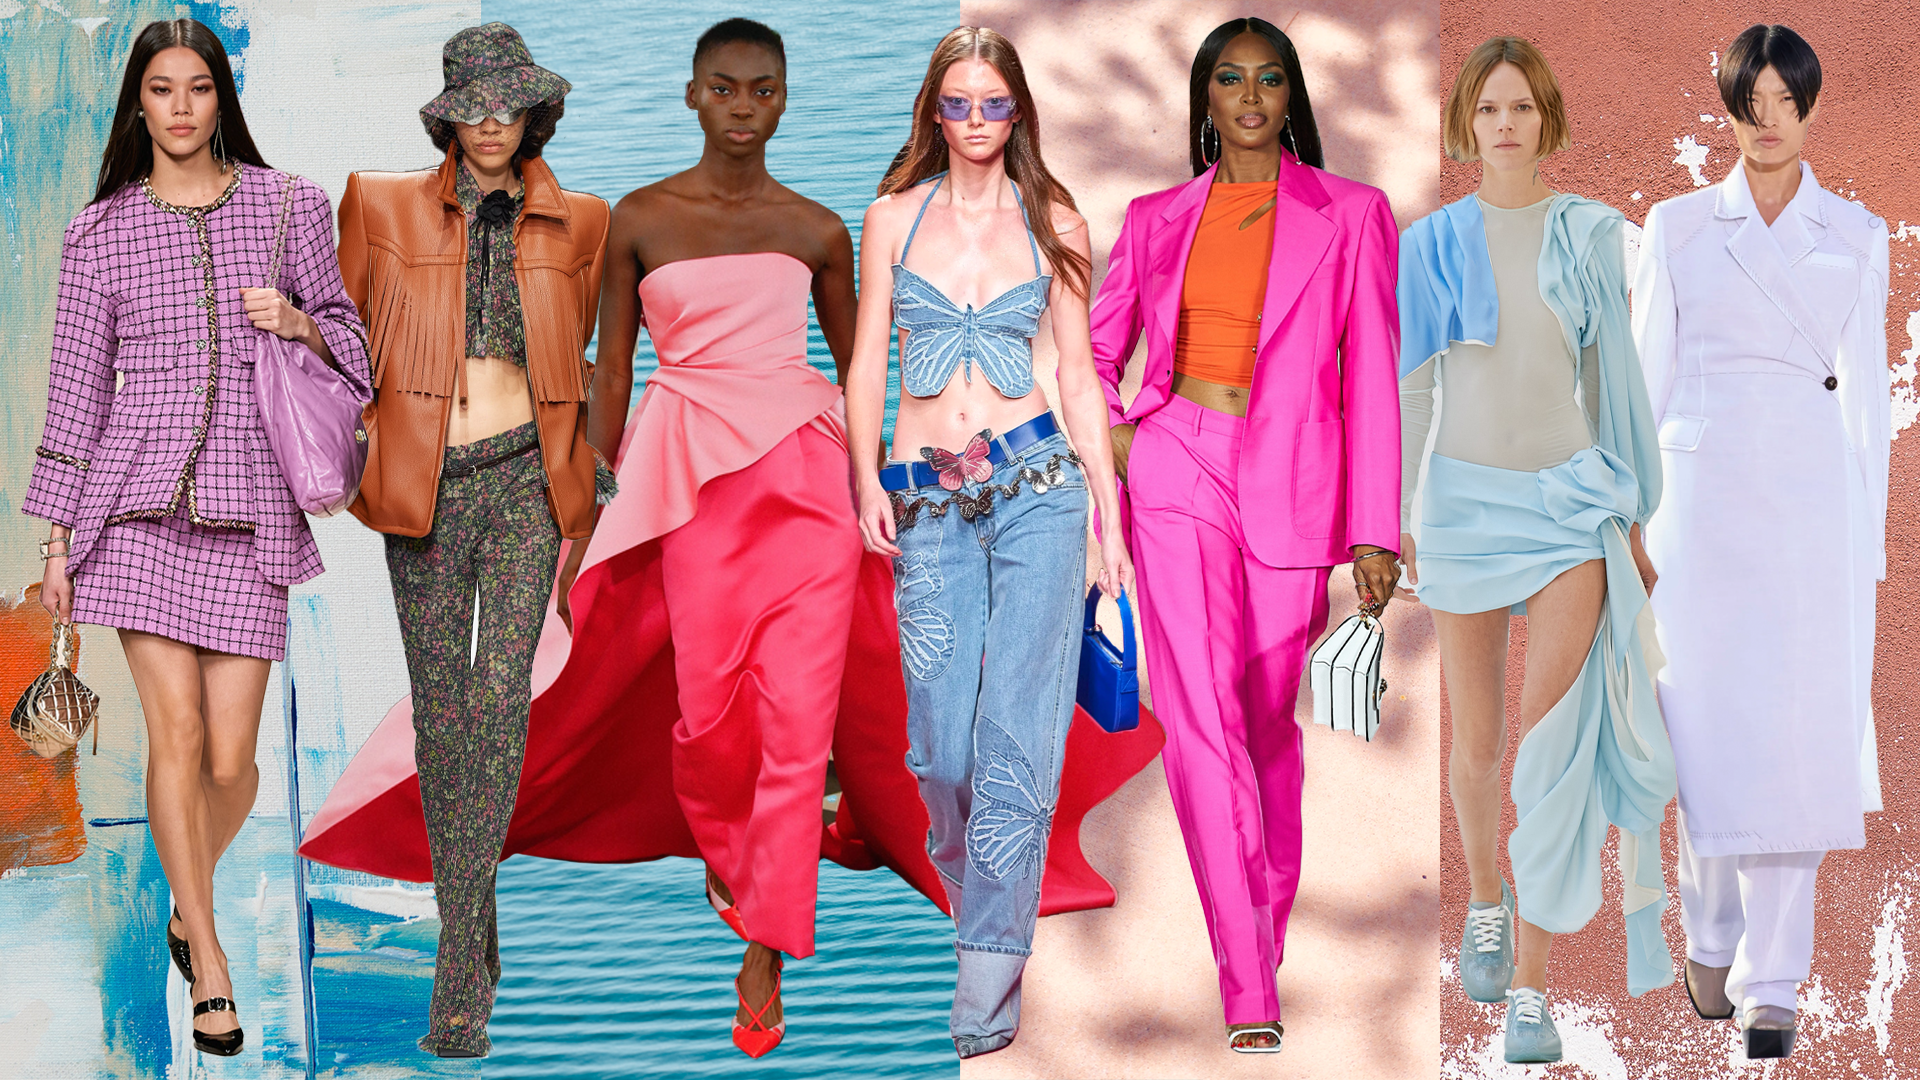 dik rommel halsband Dit zijn de 10 grootste trends van lente/zomer 2022 - Vogue NL